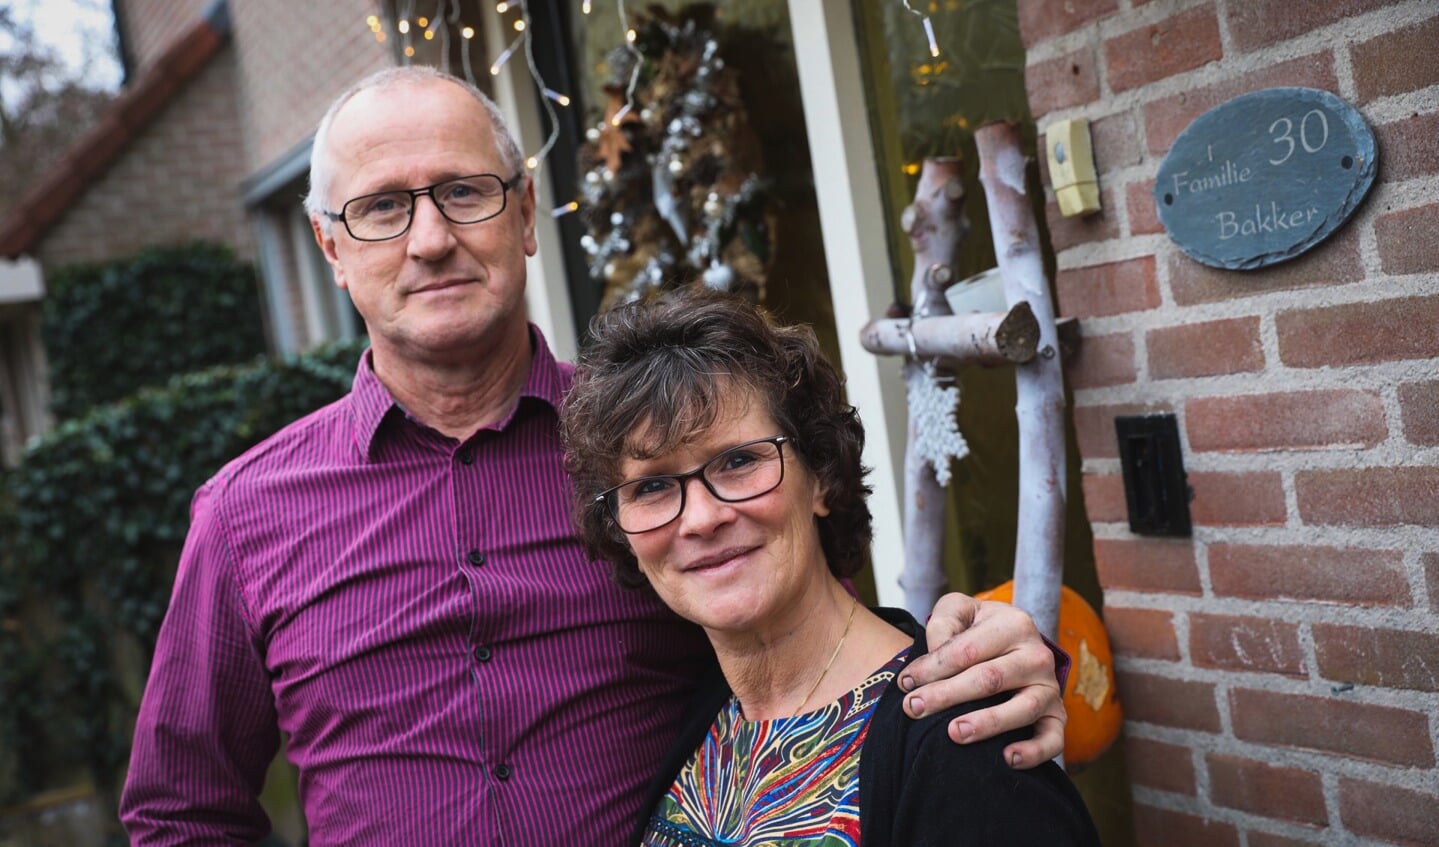 Sjaak en Anita Bakker uit Opmeer zijn dertig jaar getrouwd en wonen op nummer 30. (Foto: Vincent de Vries / Rodi Media)